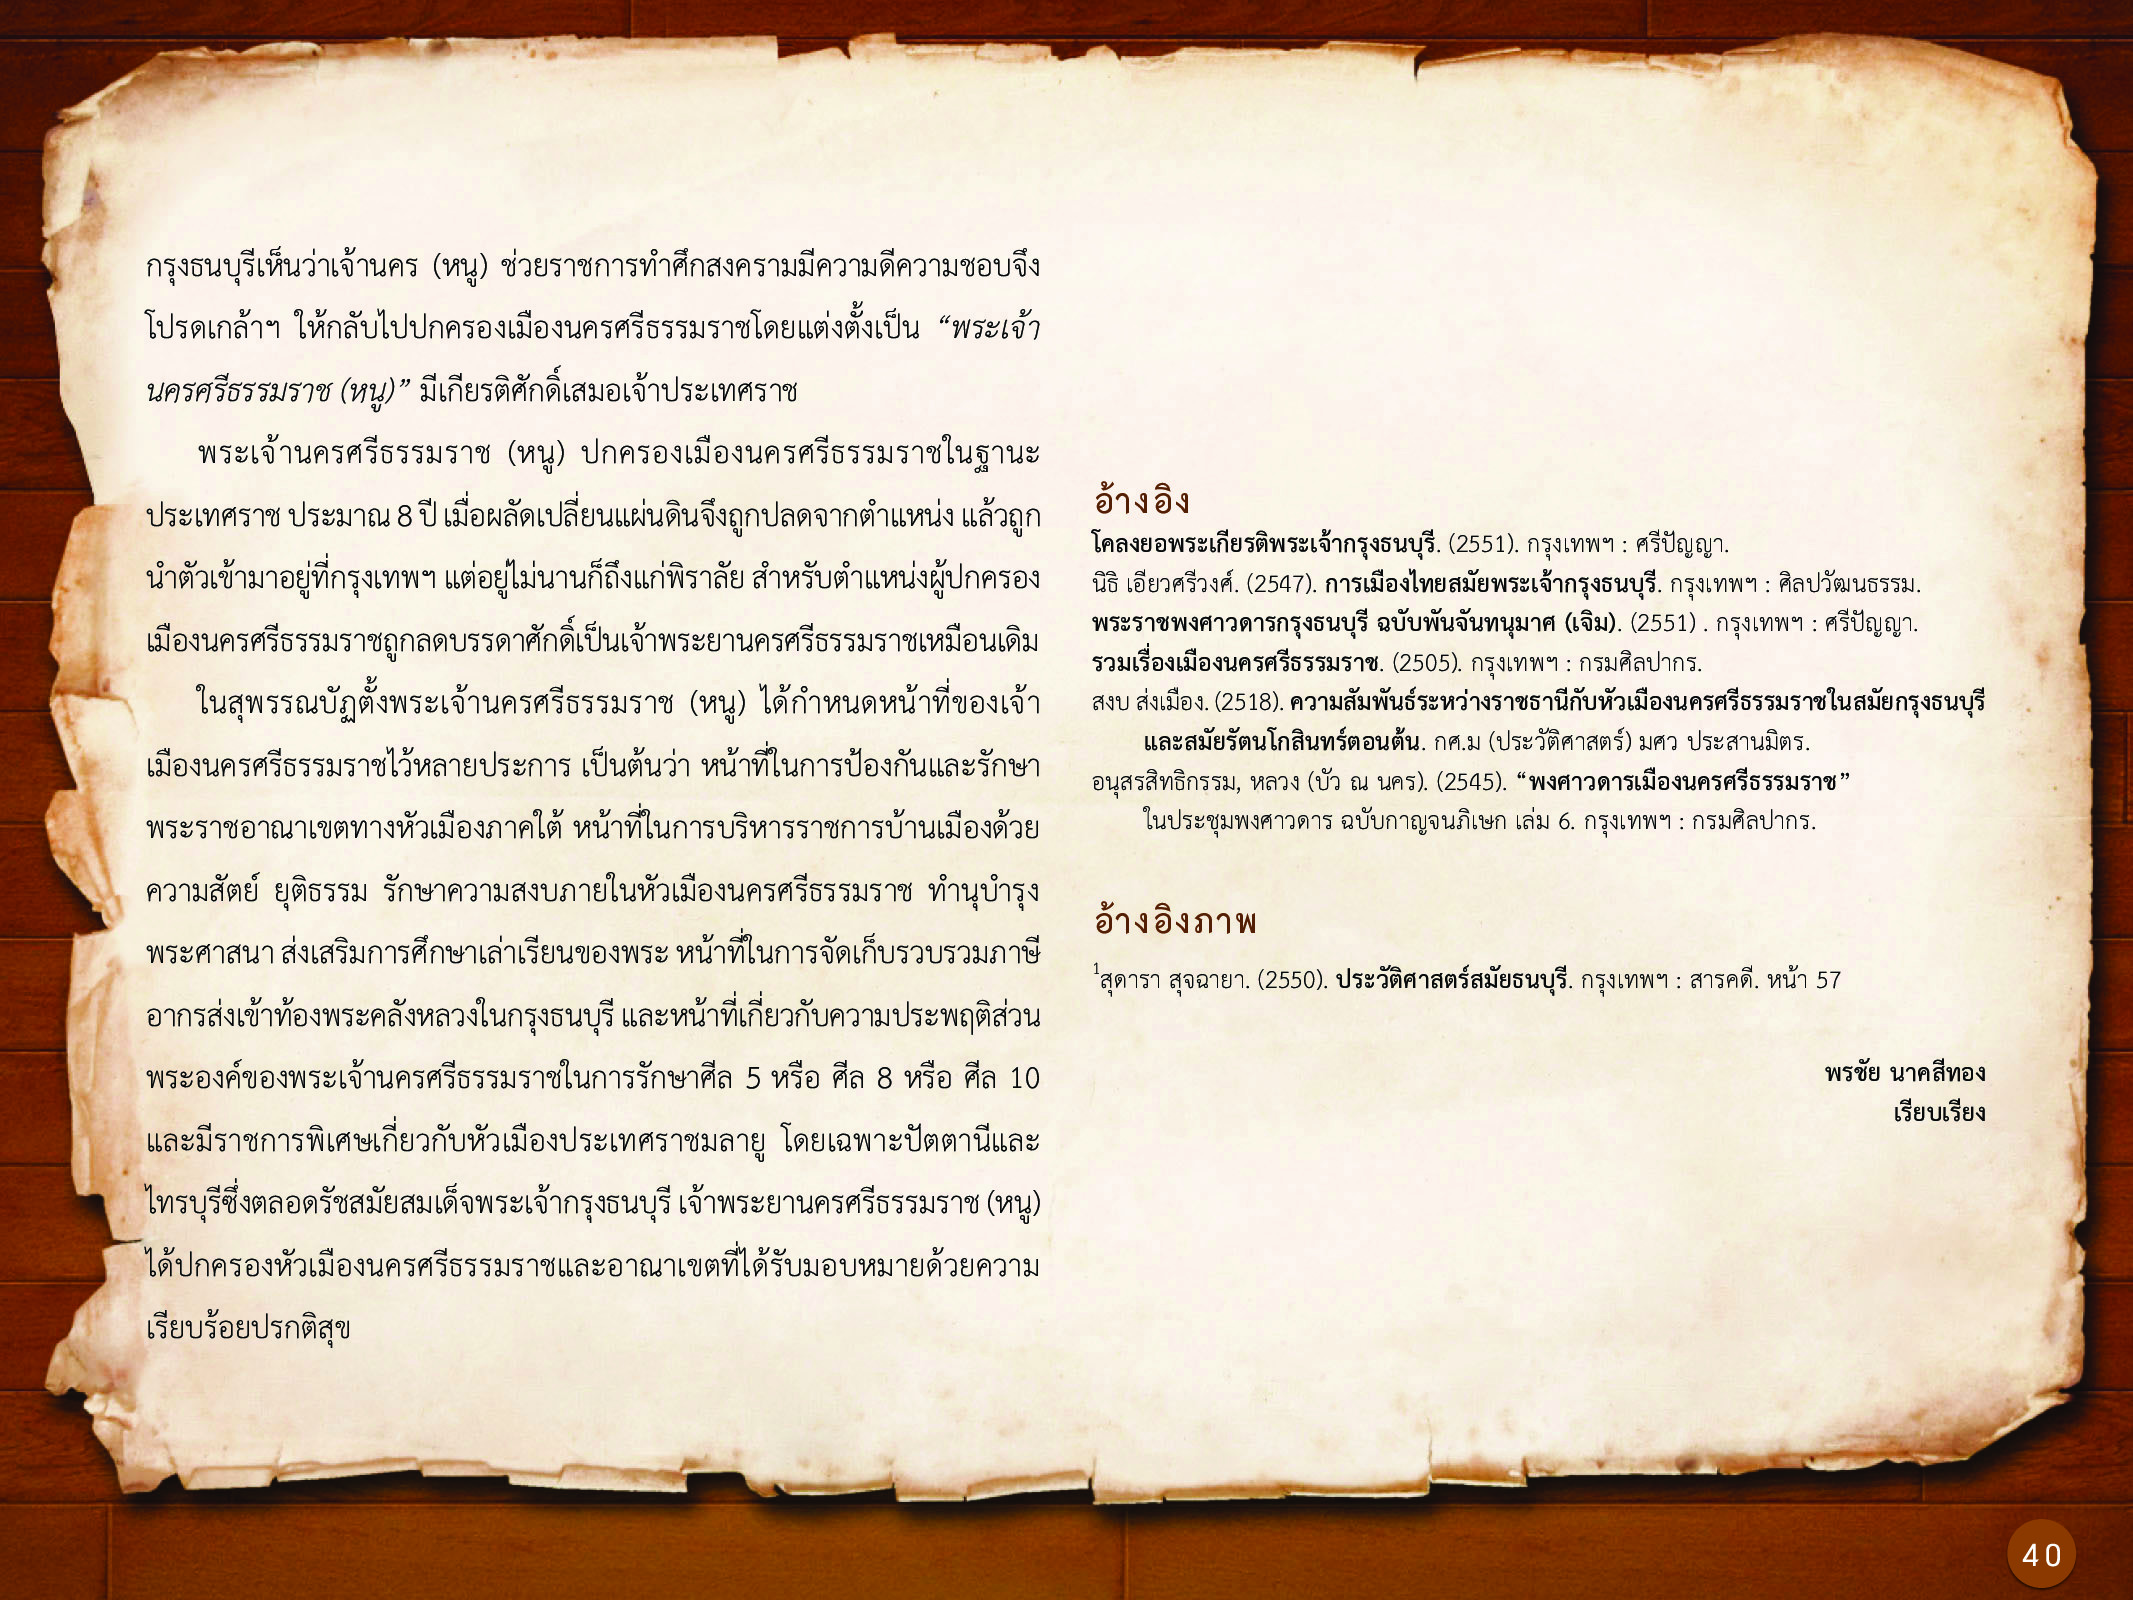 ประวัติศาสตร์กรุงธนบุรี ./images/history_dhonburi/40.jpg